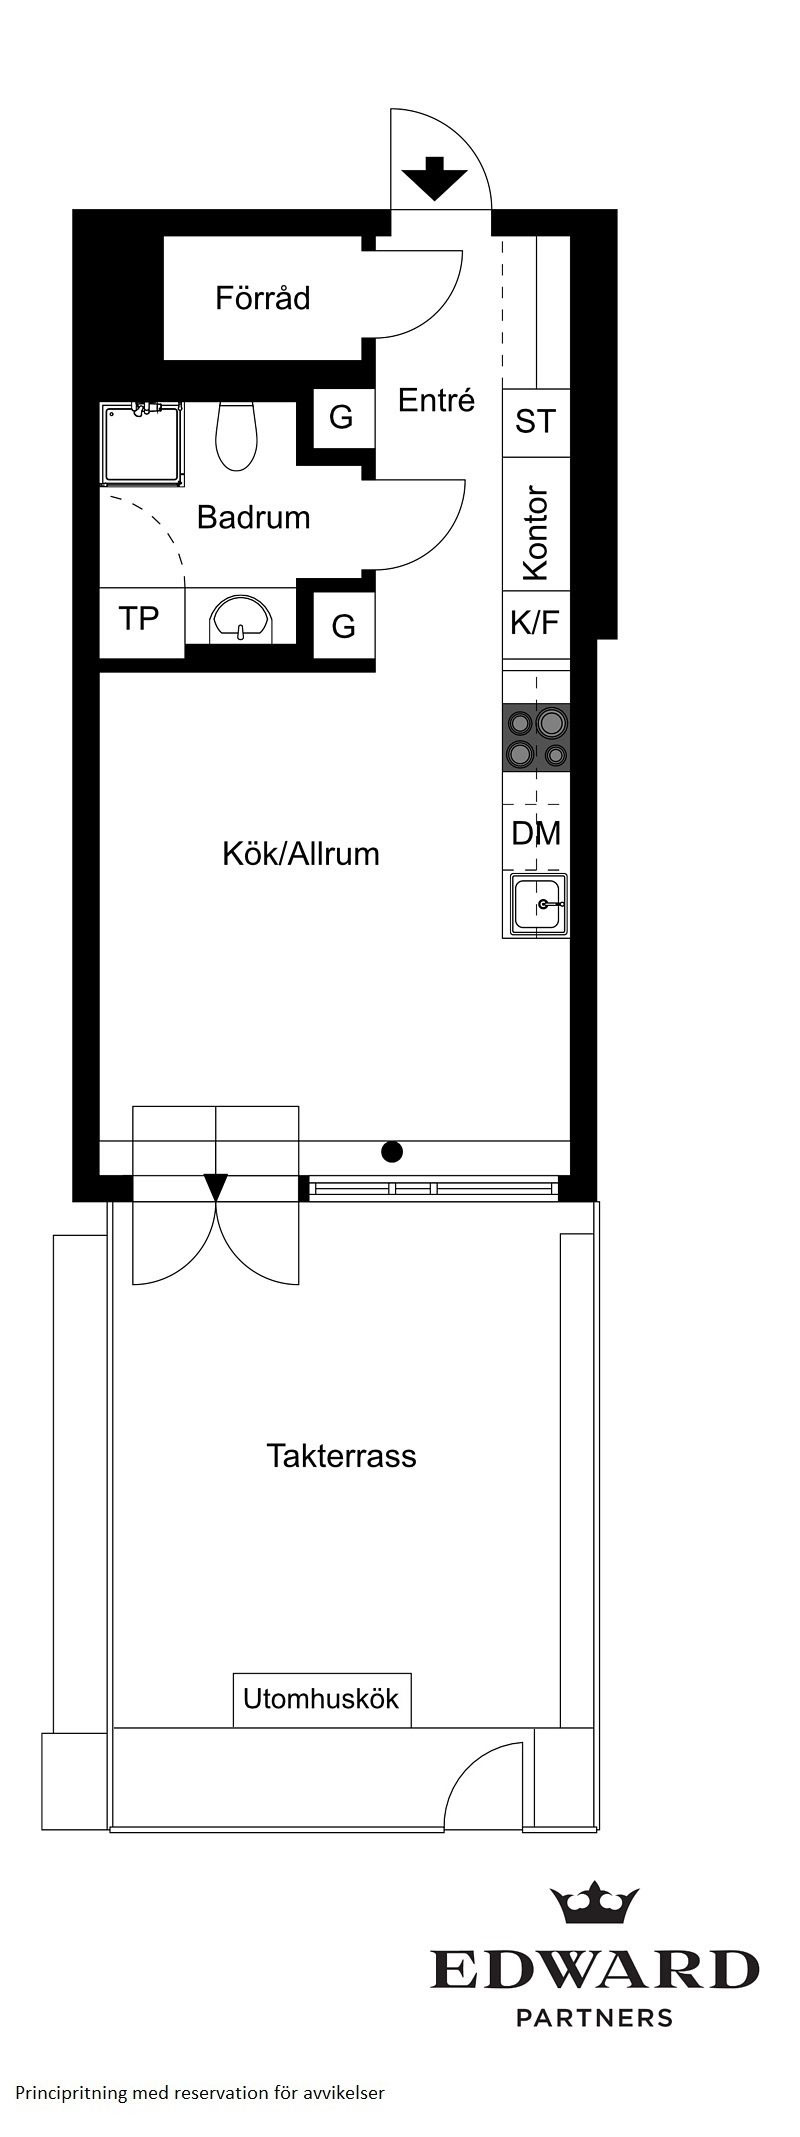 Класс! Когда терраса размером с квартиру: маленькое жилье с большим бонусом в Стокгольме